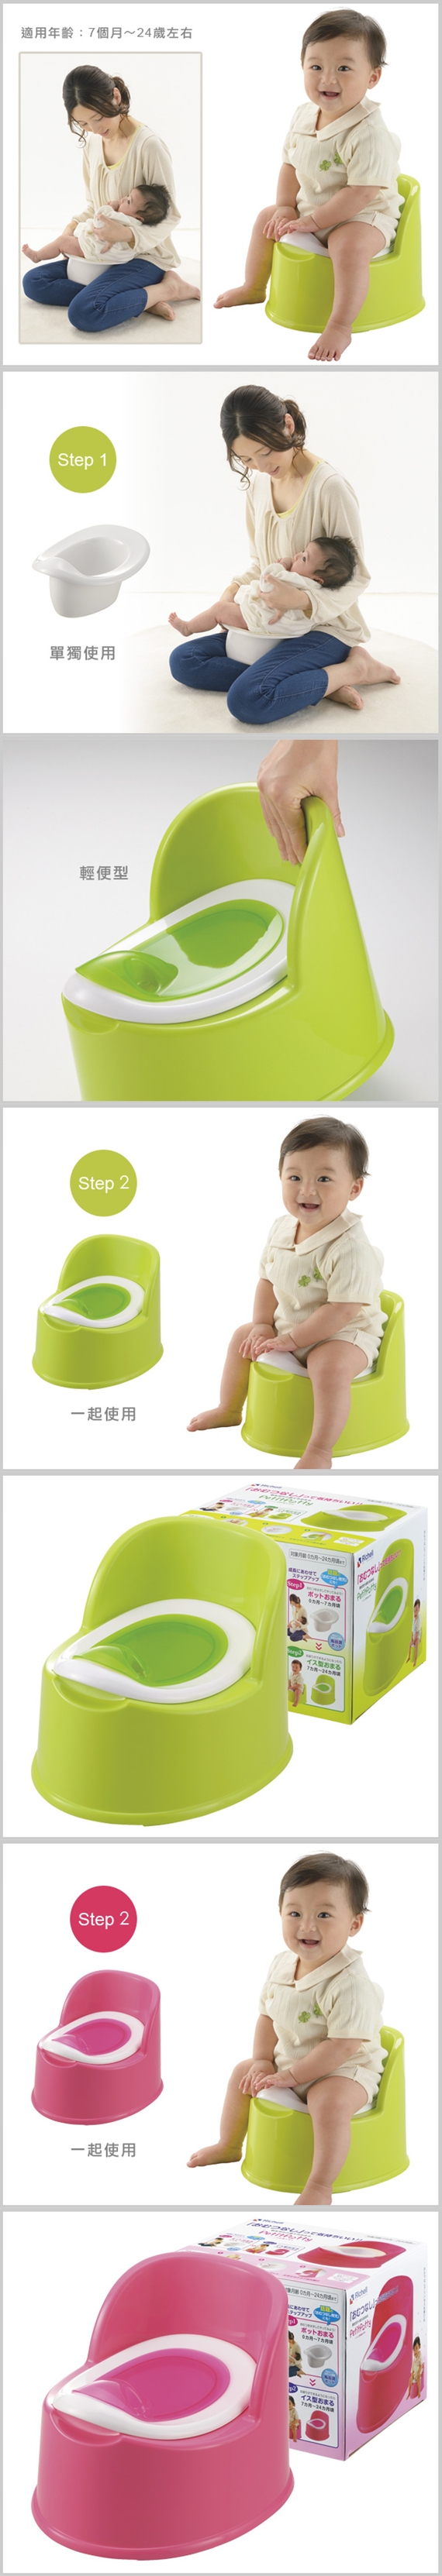 利其爾Richell-輕便型便椅(桃紅/綠色)